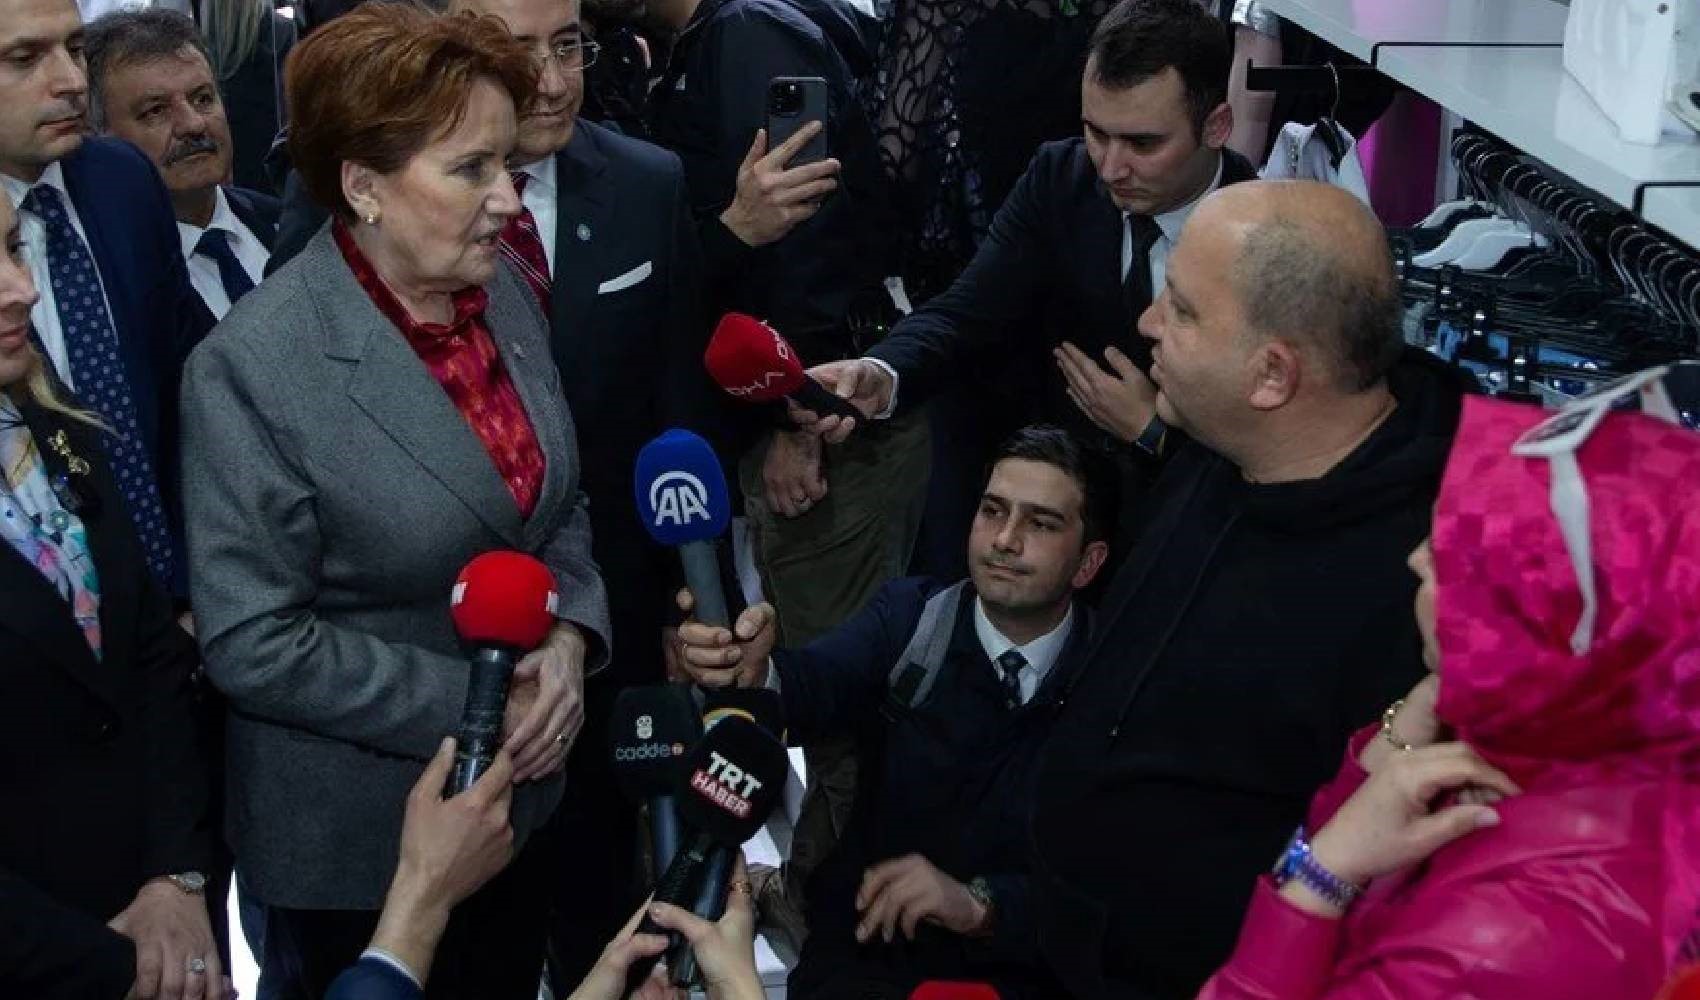 İYİ Parti Genel Başkanı Meral Akşener: 'gıcıklık olsun'